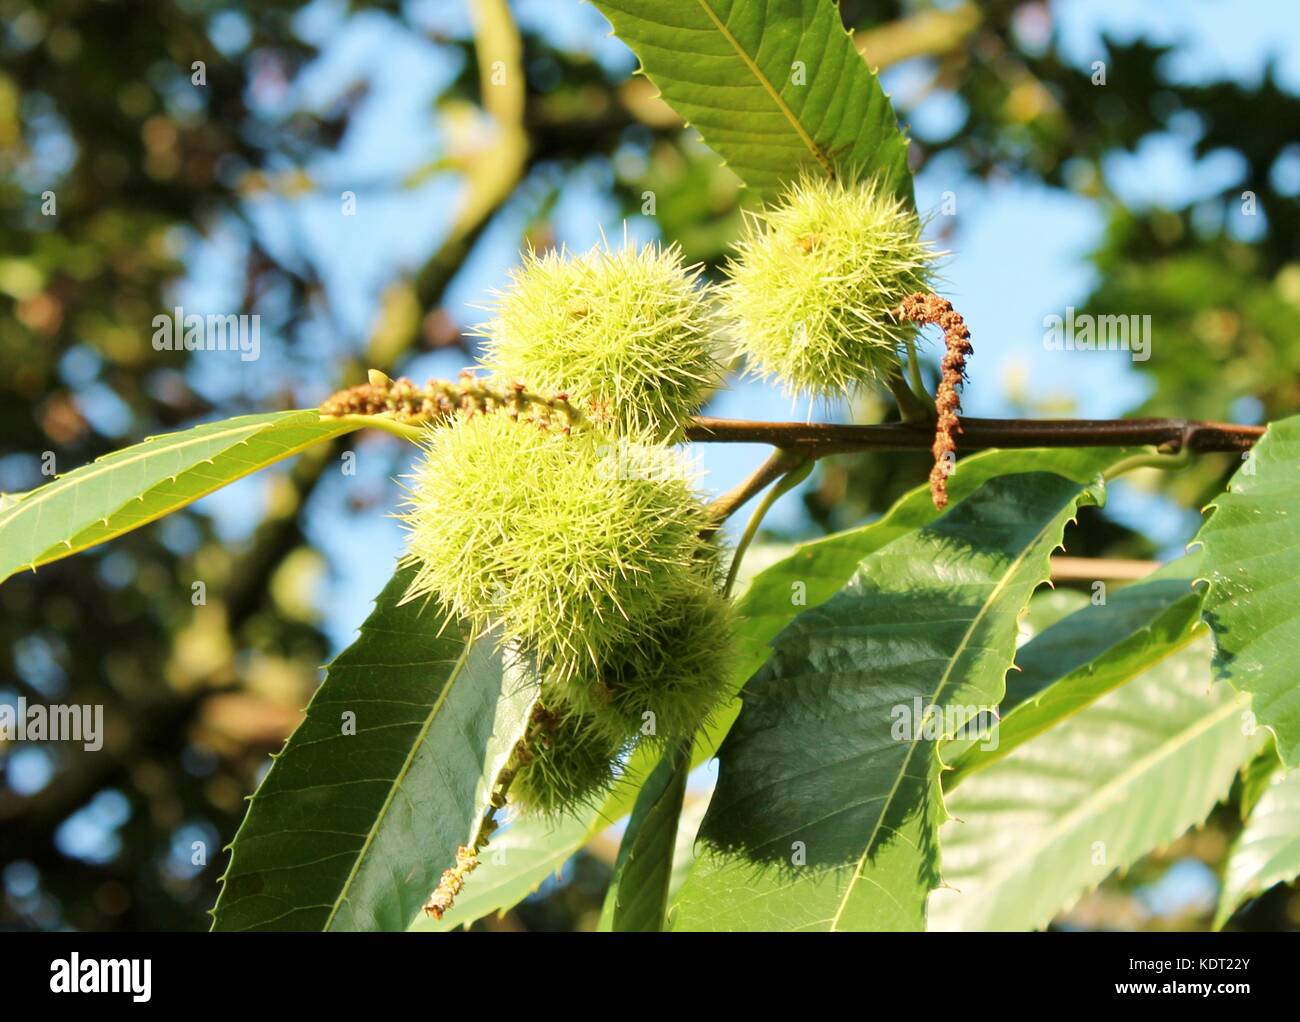 conker horse chestnut tree shell husk seed nut harvest, sharp spikes ...